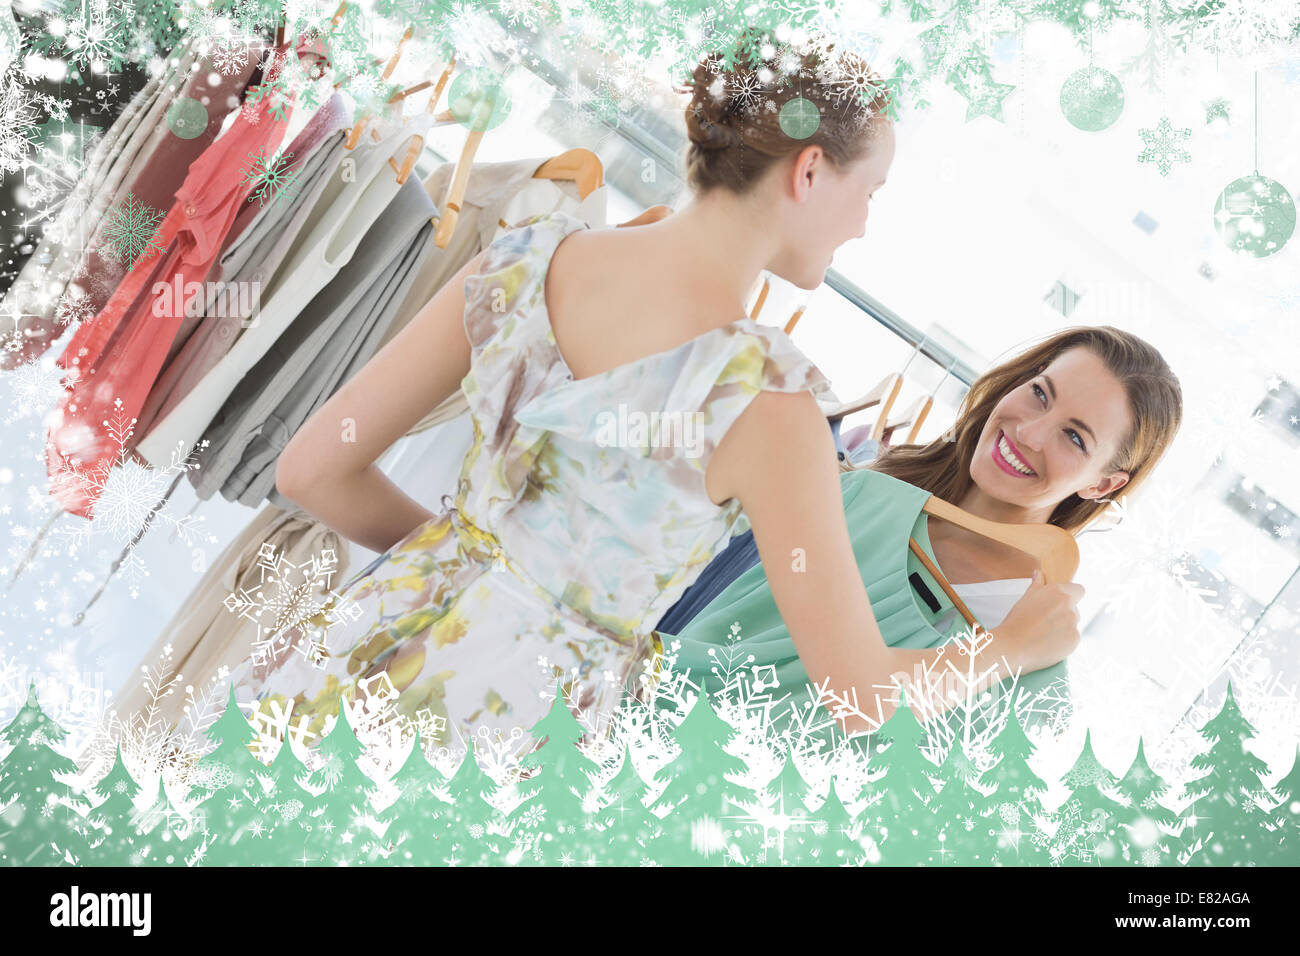 Zusammengesetztes Bild von jungen Frauen im Bekleidungsgeschäft einkaufen Stockfoto